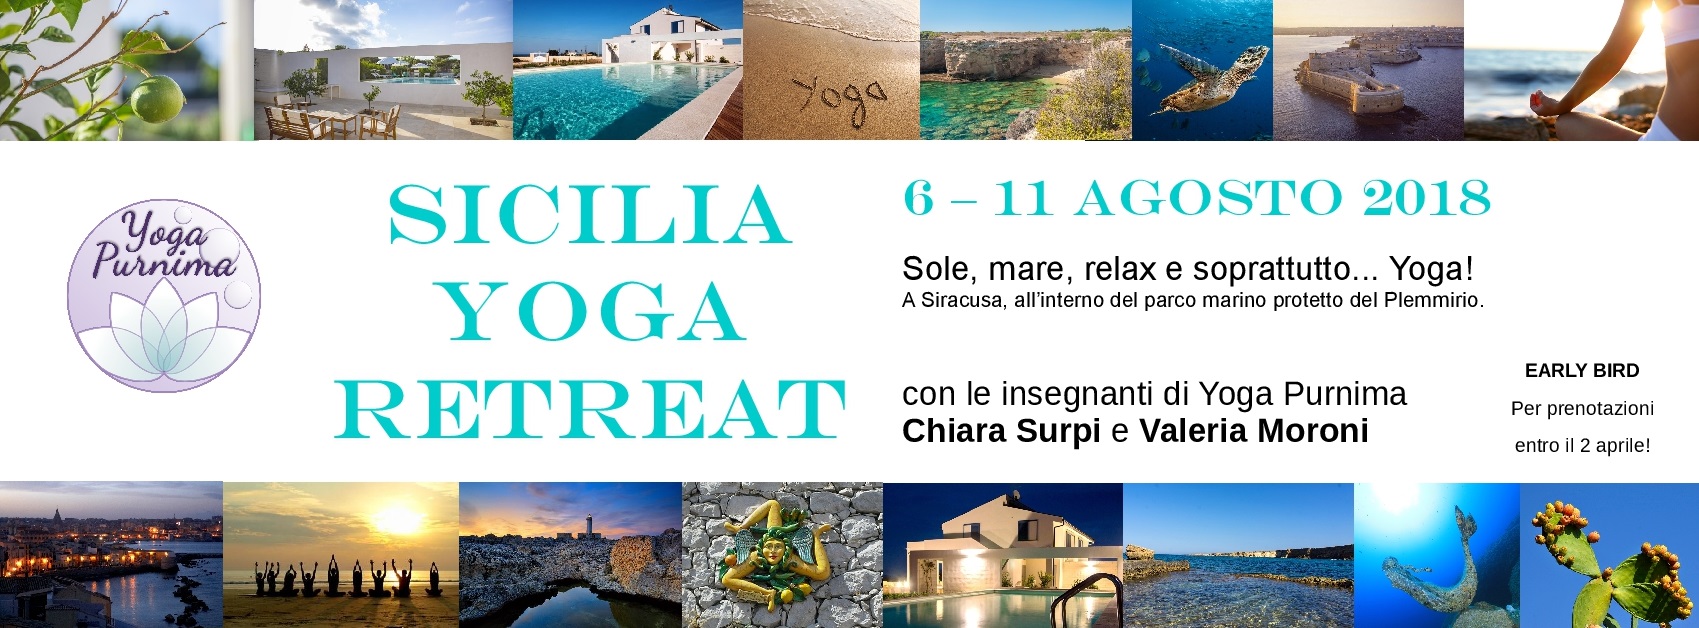 6 – 11 agosto 2018: Sicilia Yoga Retreat, vacanza yoga!